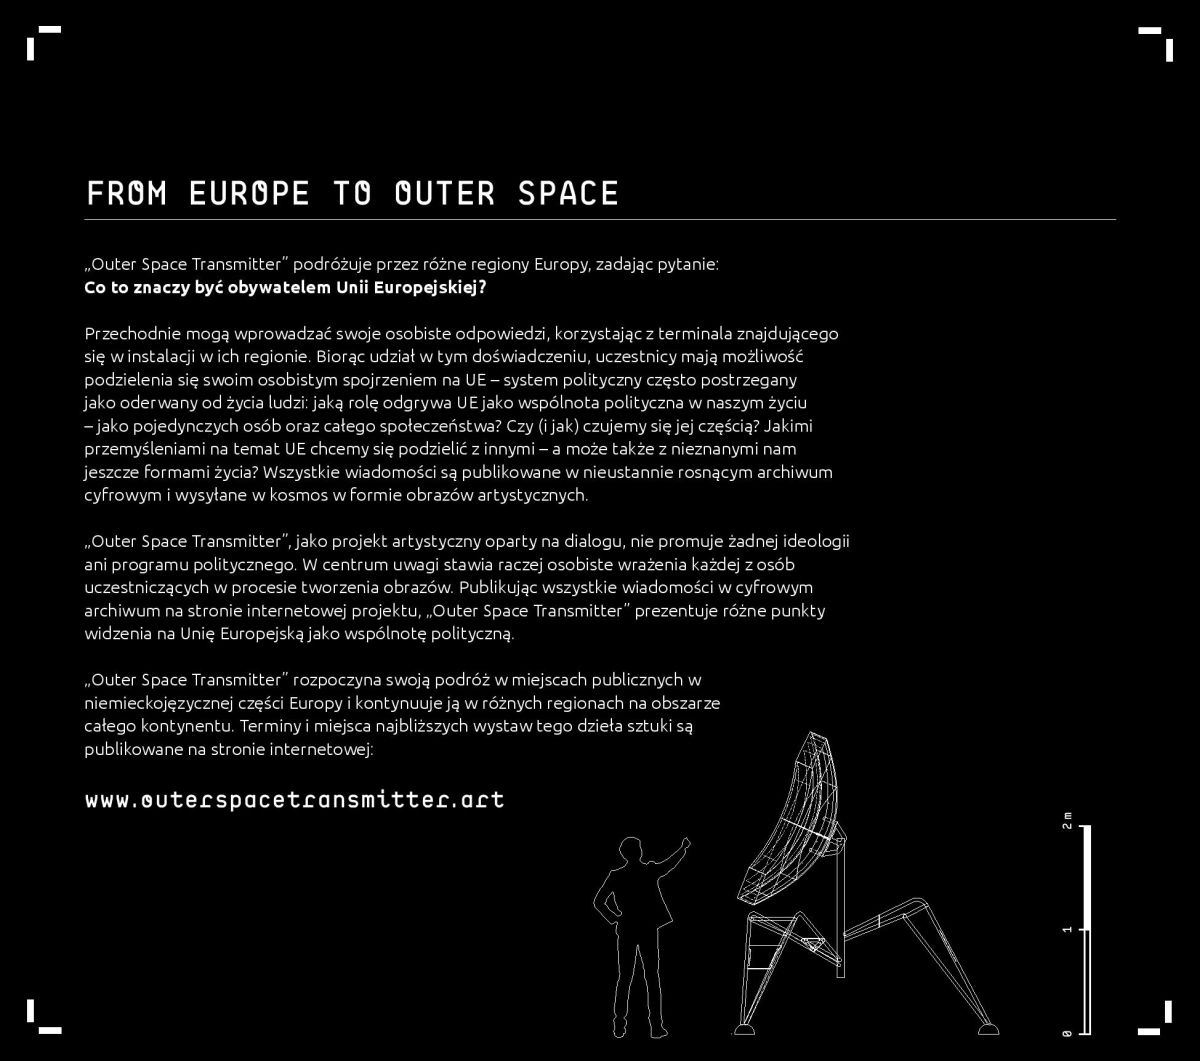 Outer Space Transmitter - wyślij wiadomość w przestrzeń kosmiczną z naukowcami z UJ - 3